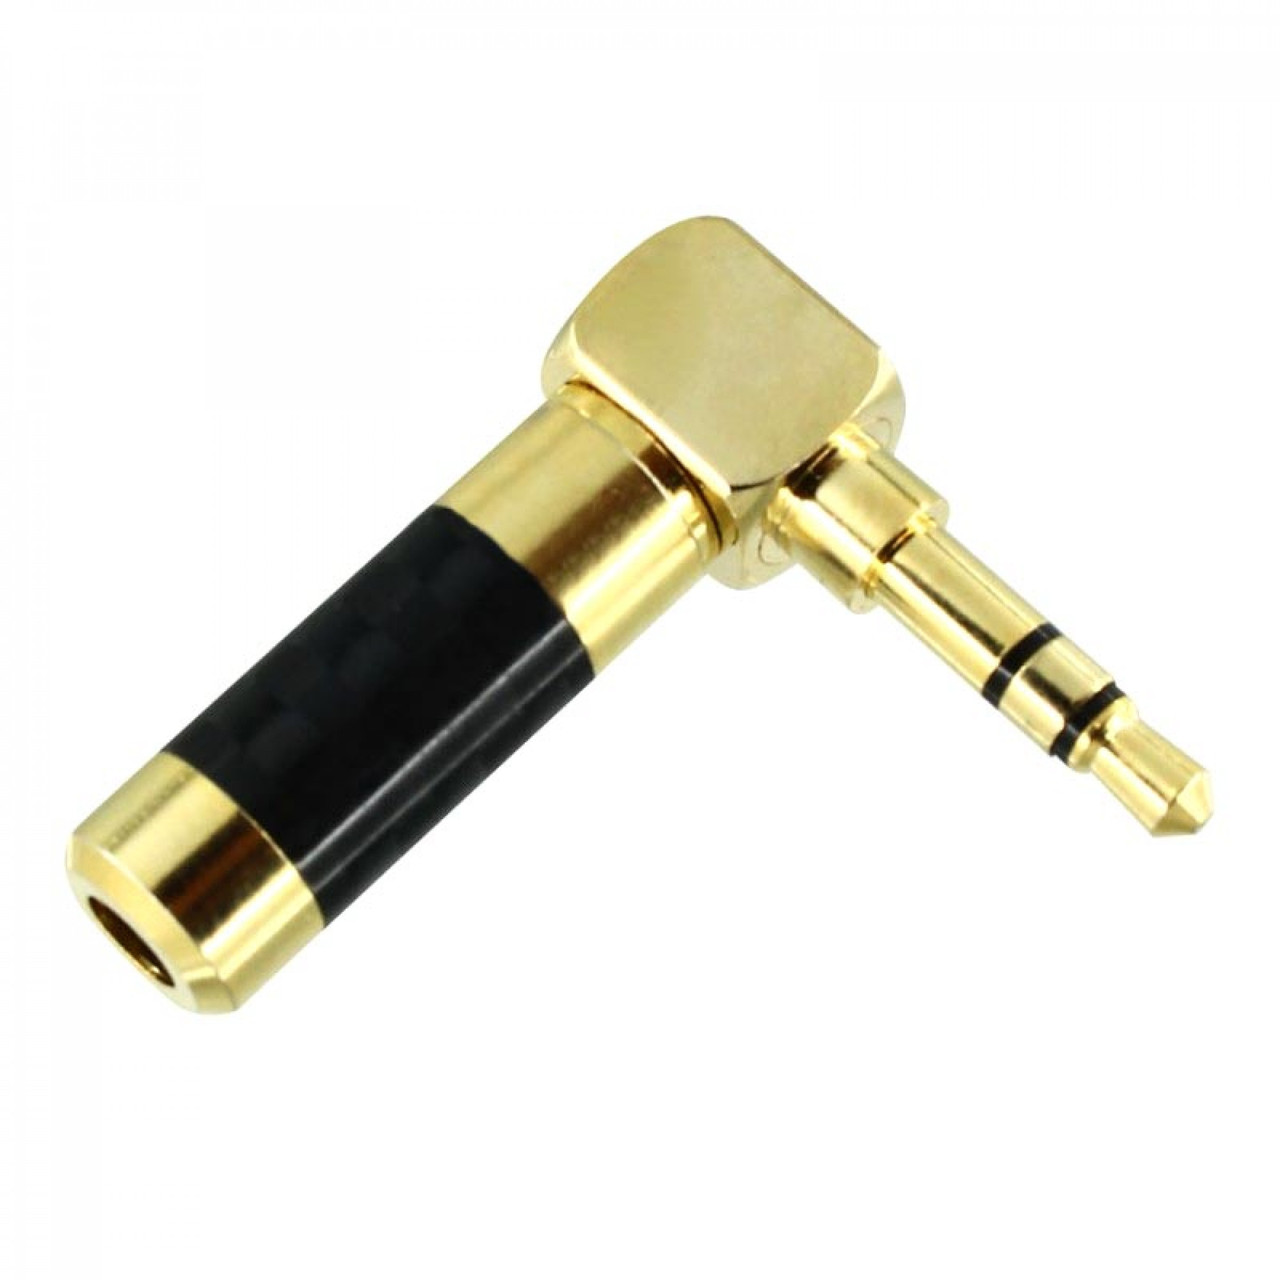 Штекер металлический  3.5 мм угловой премиум (gold) черного цвета для подключения кабеля к аудио оборудованию